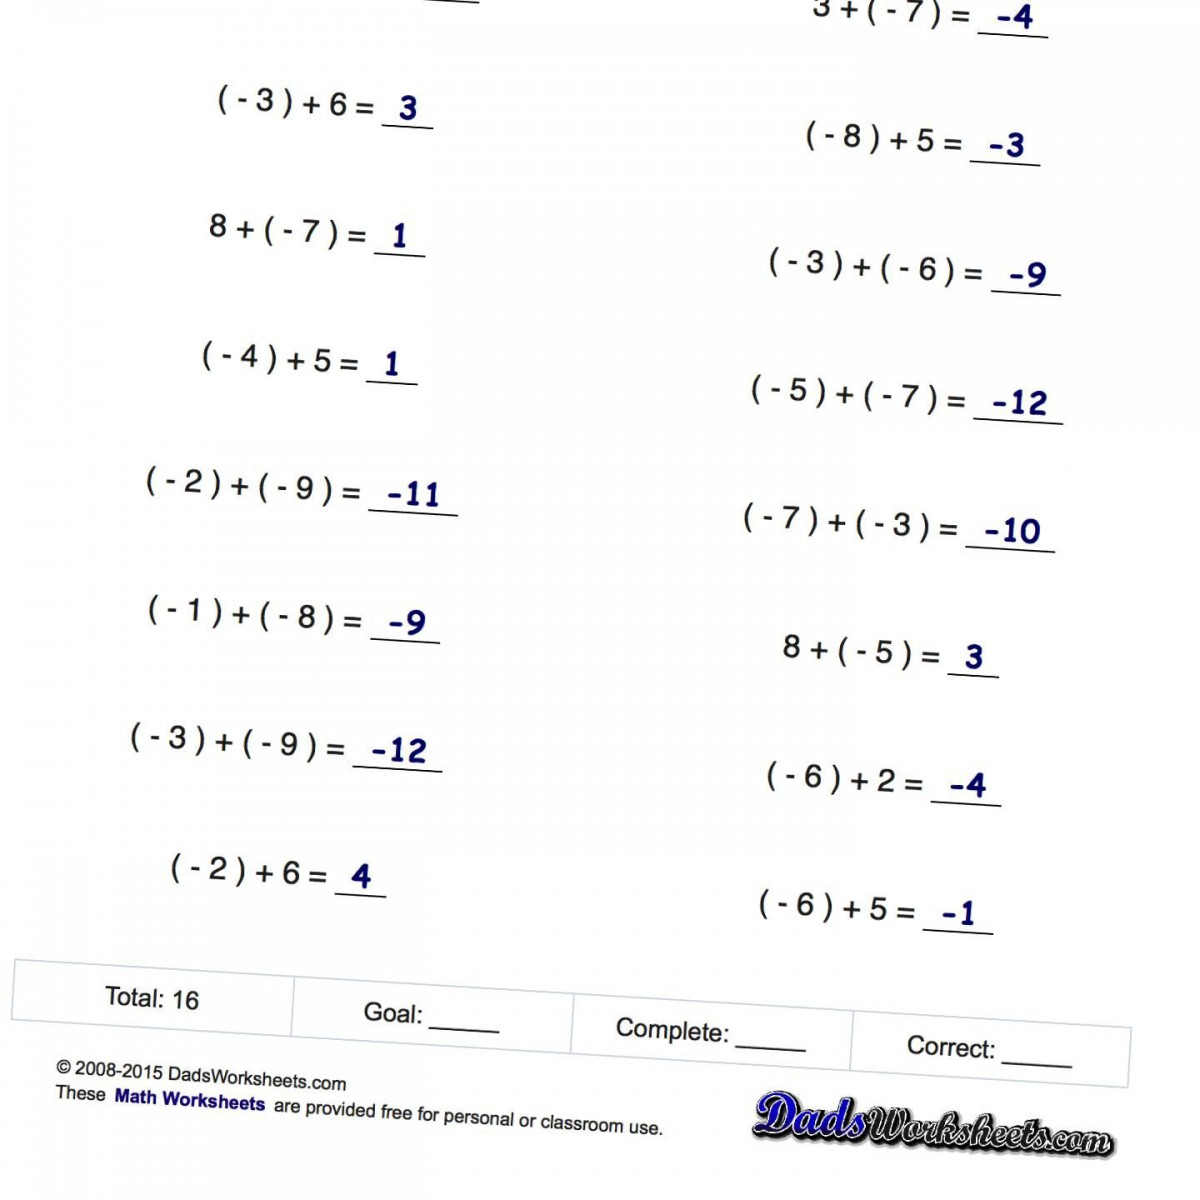 algebraic-equations-with-negative-numbers-worksheet-2022-numbersworksheets